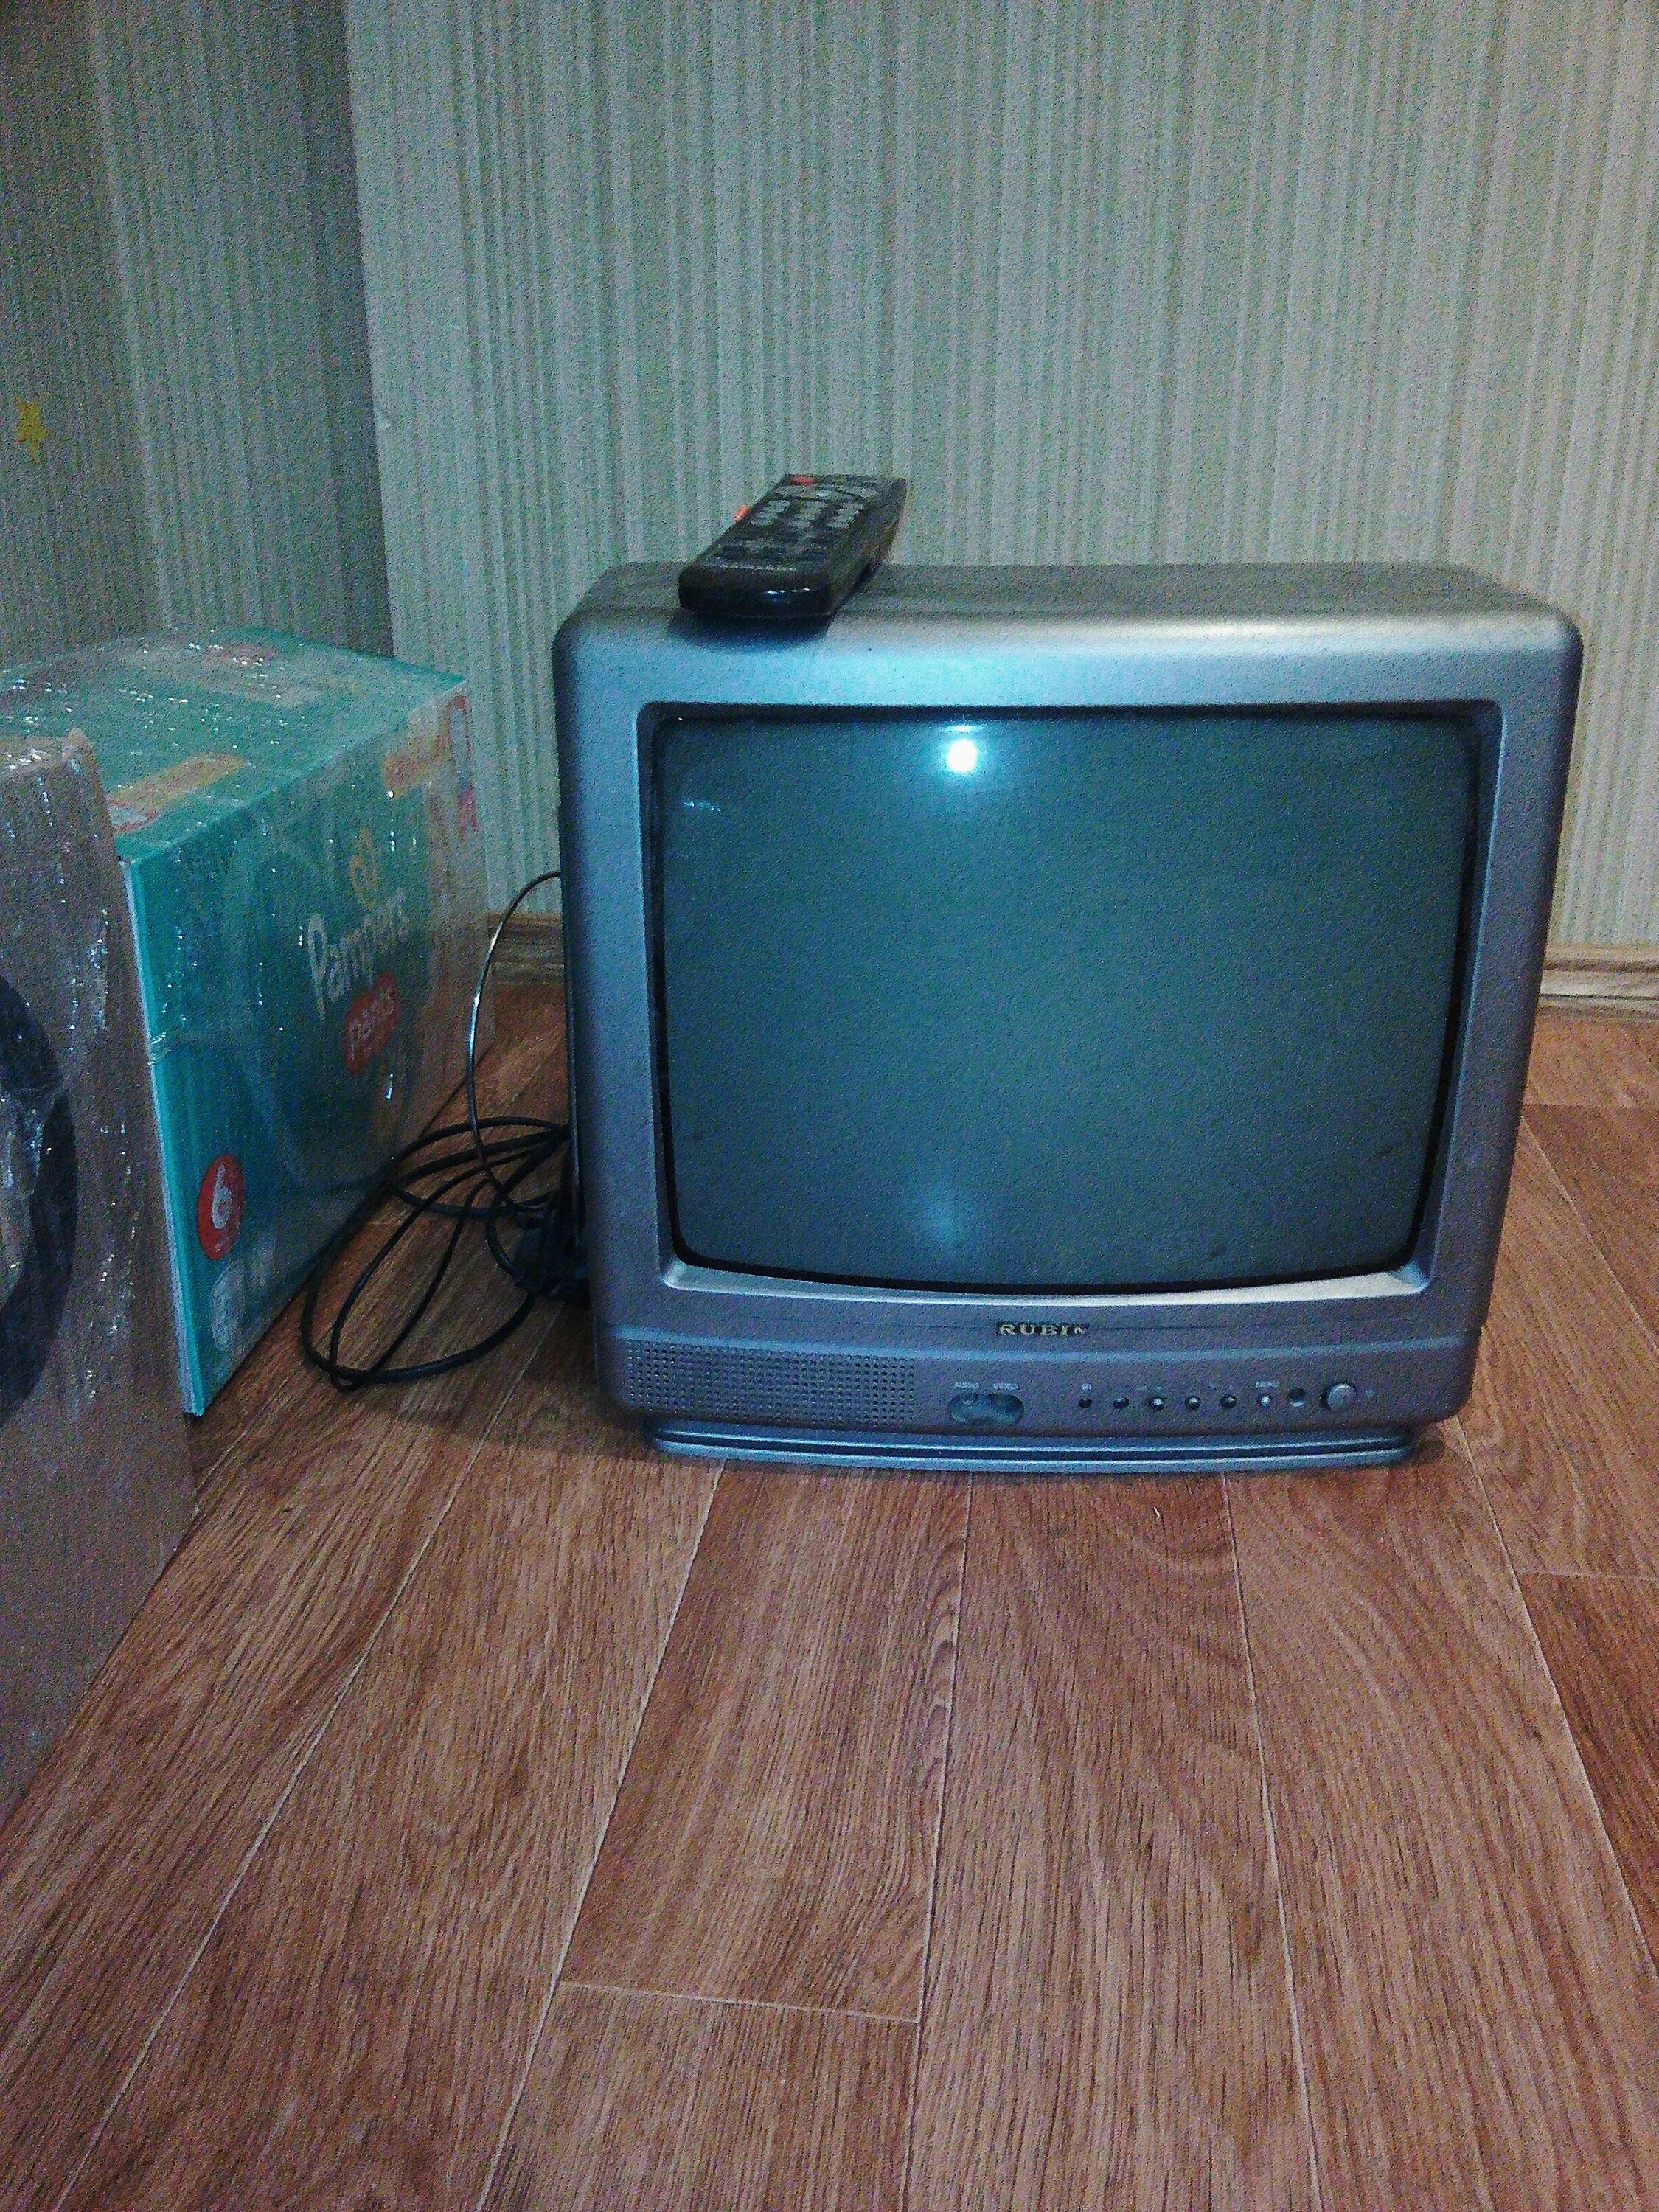 CK-5081zr ламповый телевизор. GOLDSTAR ламповый телевизор разъёмы. Маленький ламповый телевизор. Ламповый мини телевизор.